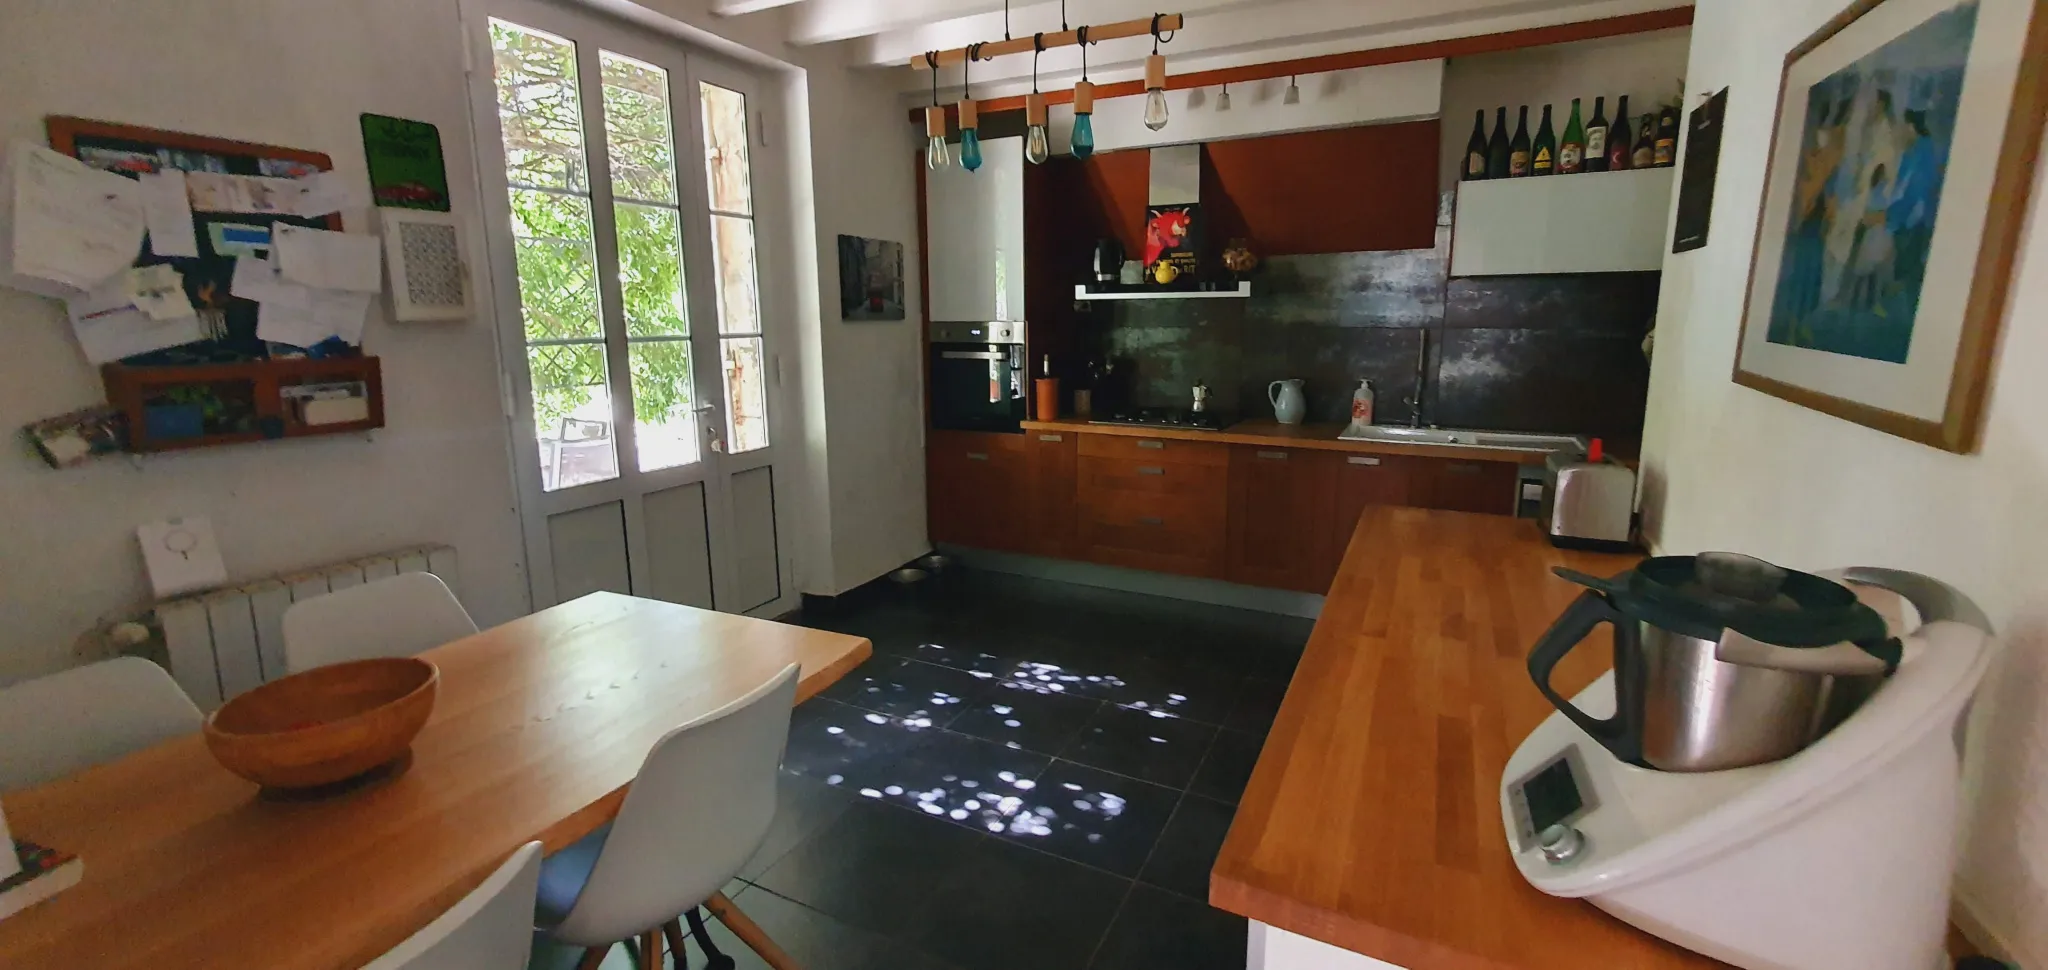 Proche Marmande : Maison en pierre rénovée avec piscine 